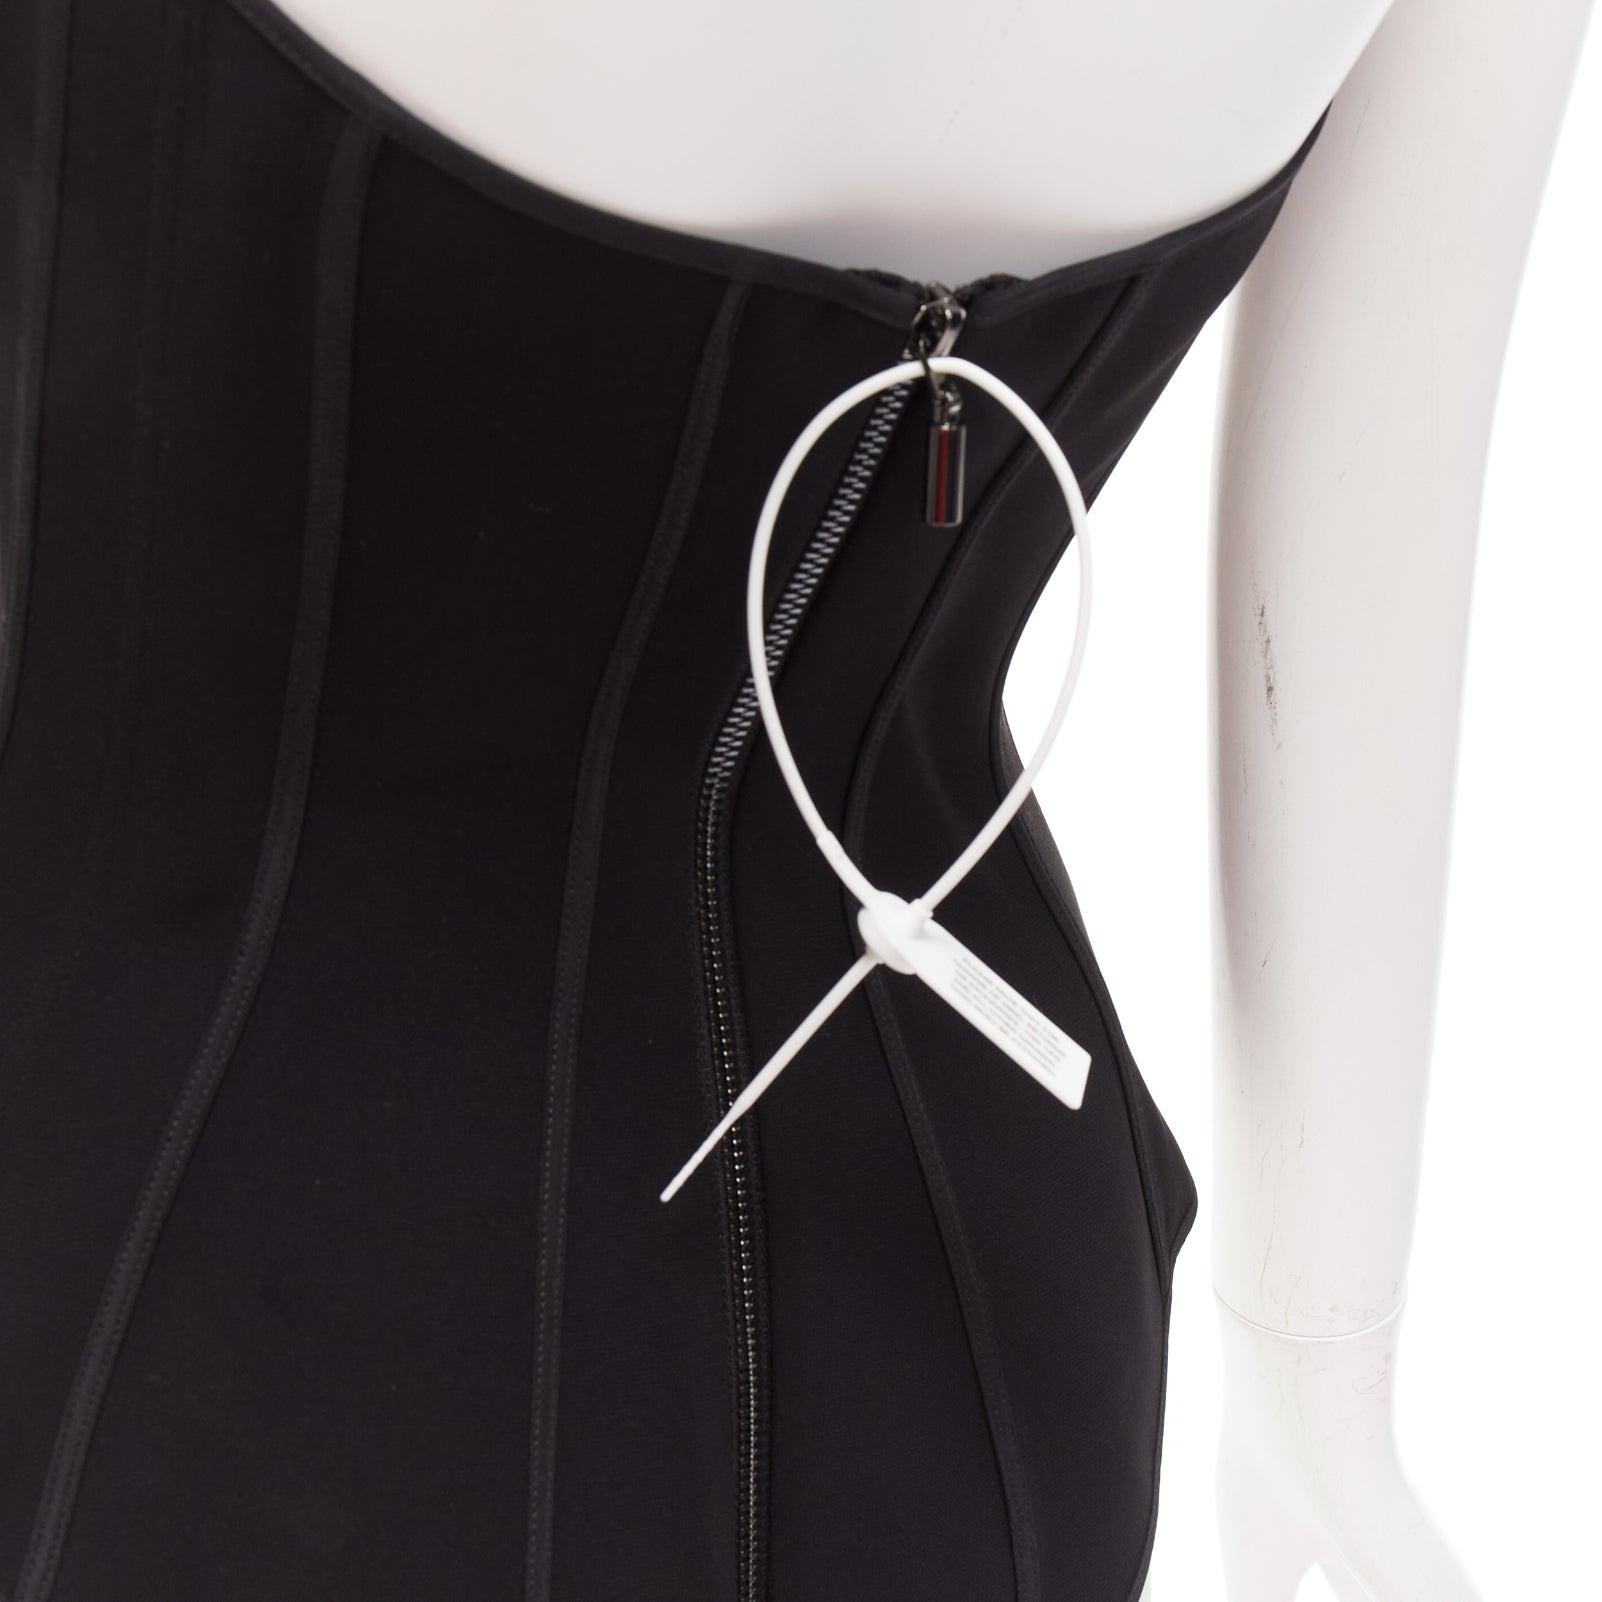 MATICEVSKI 2022 Fable Bustier black contour seam boned corset top AUS10 M For Sale 2